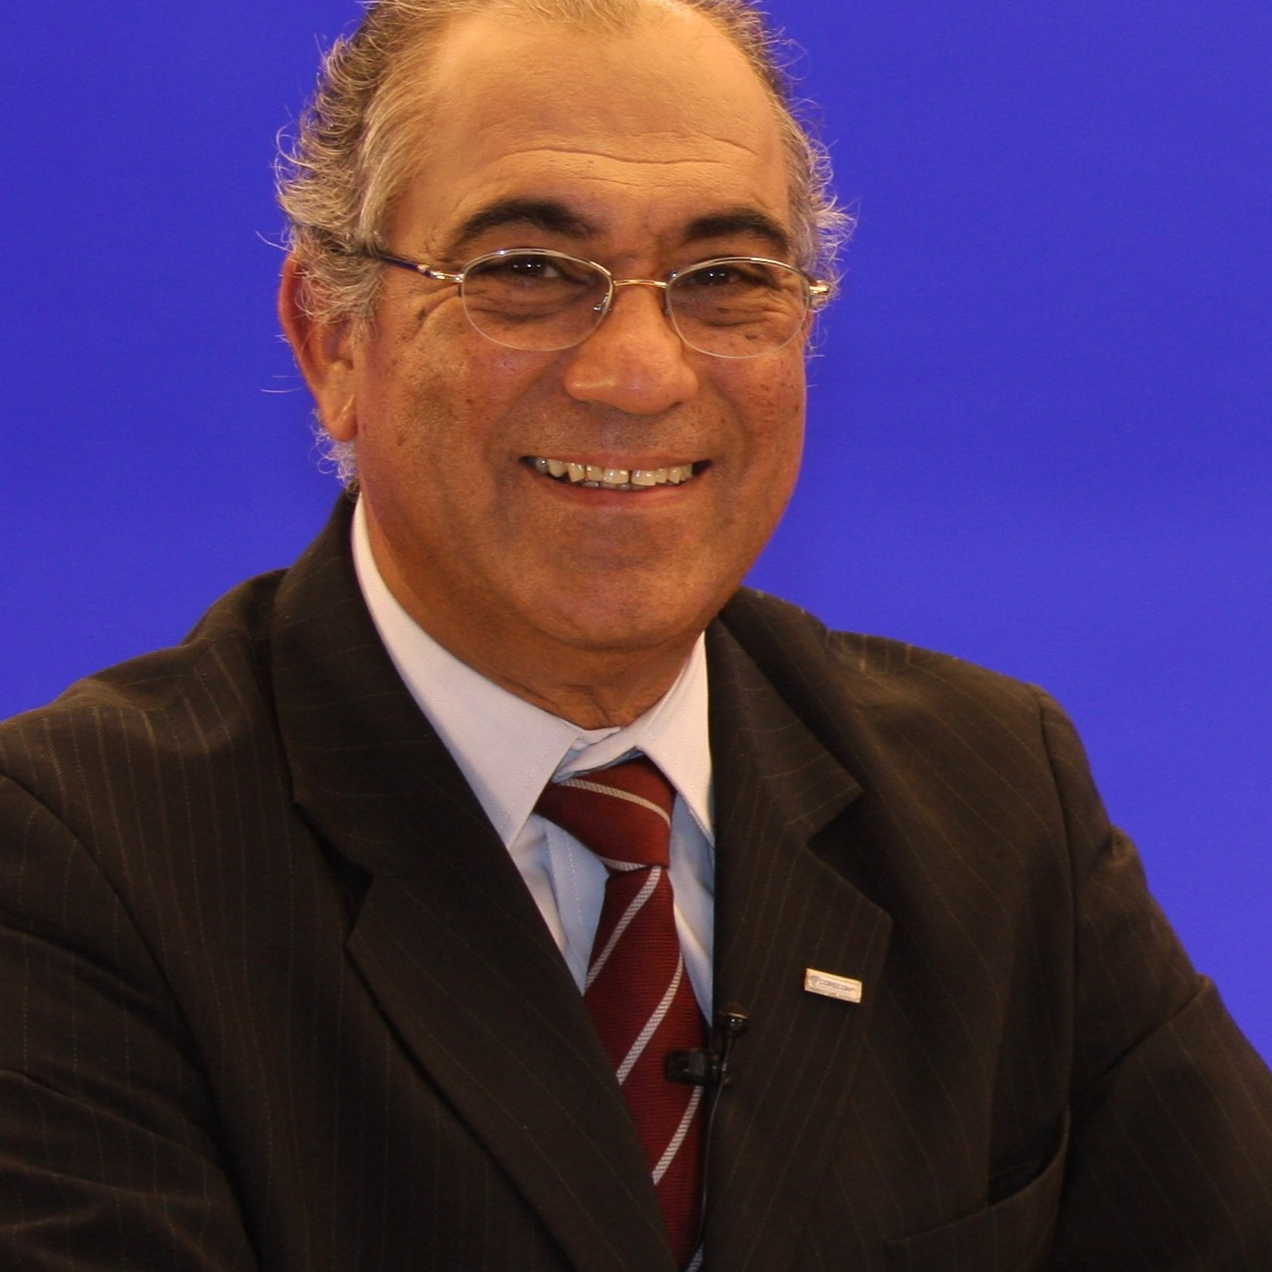 Luiz Carlos Barnabé Almeida